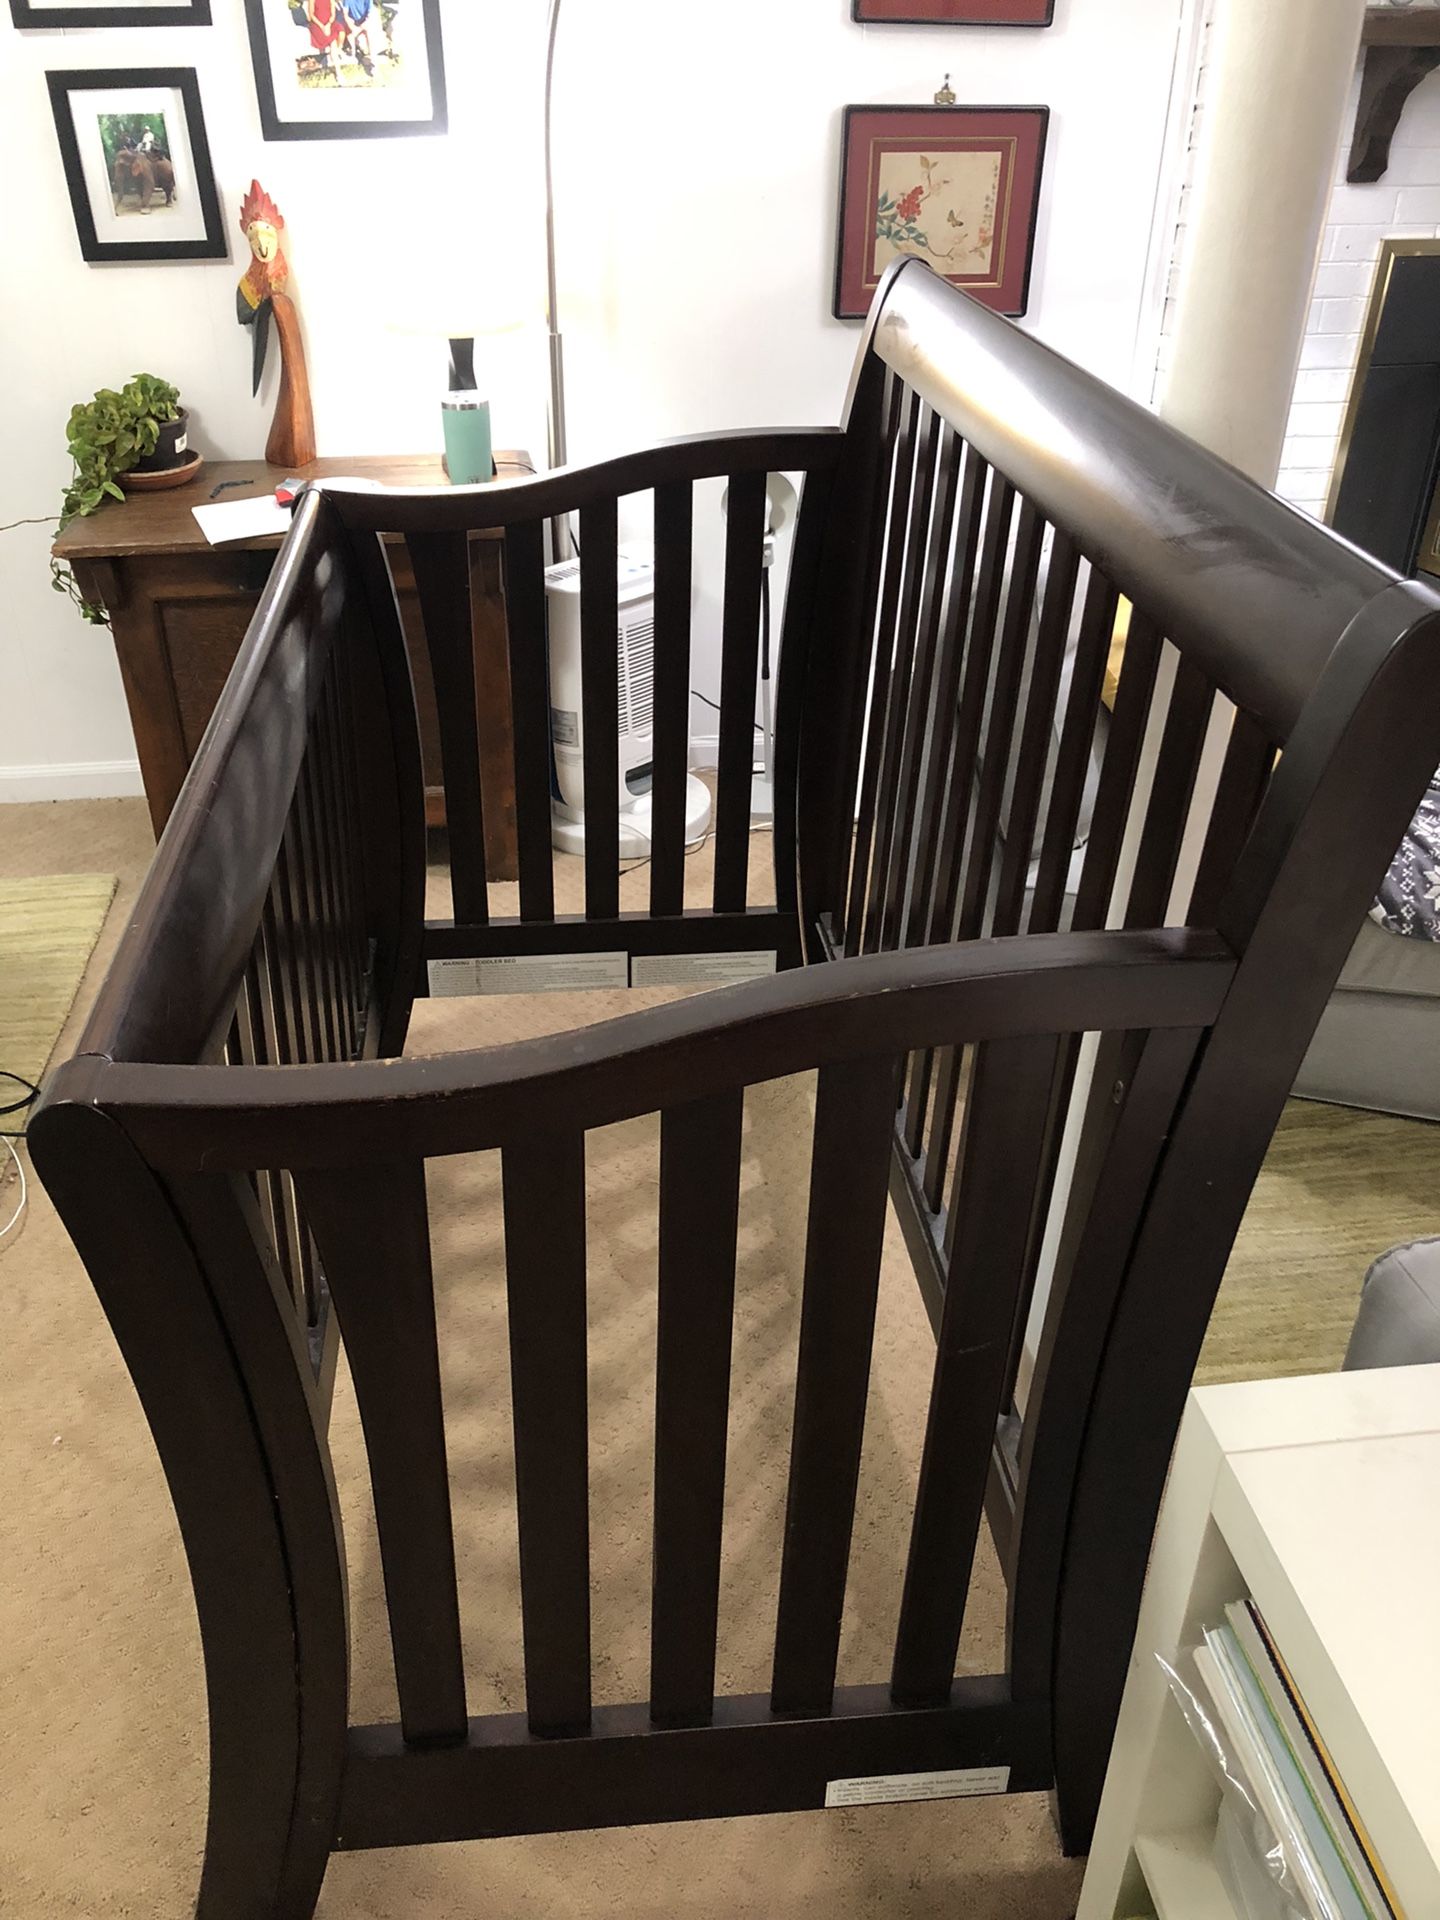 Munire Urban baby furniture set